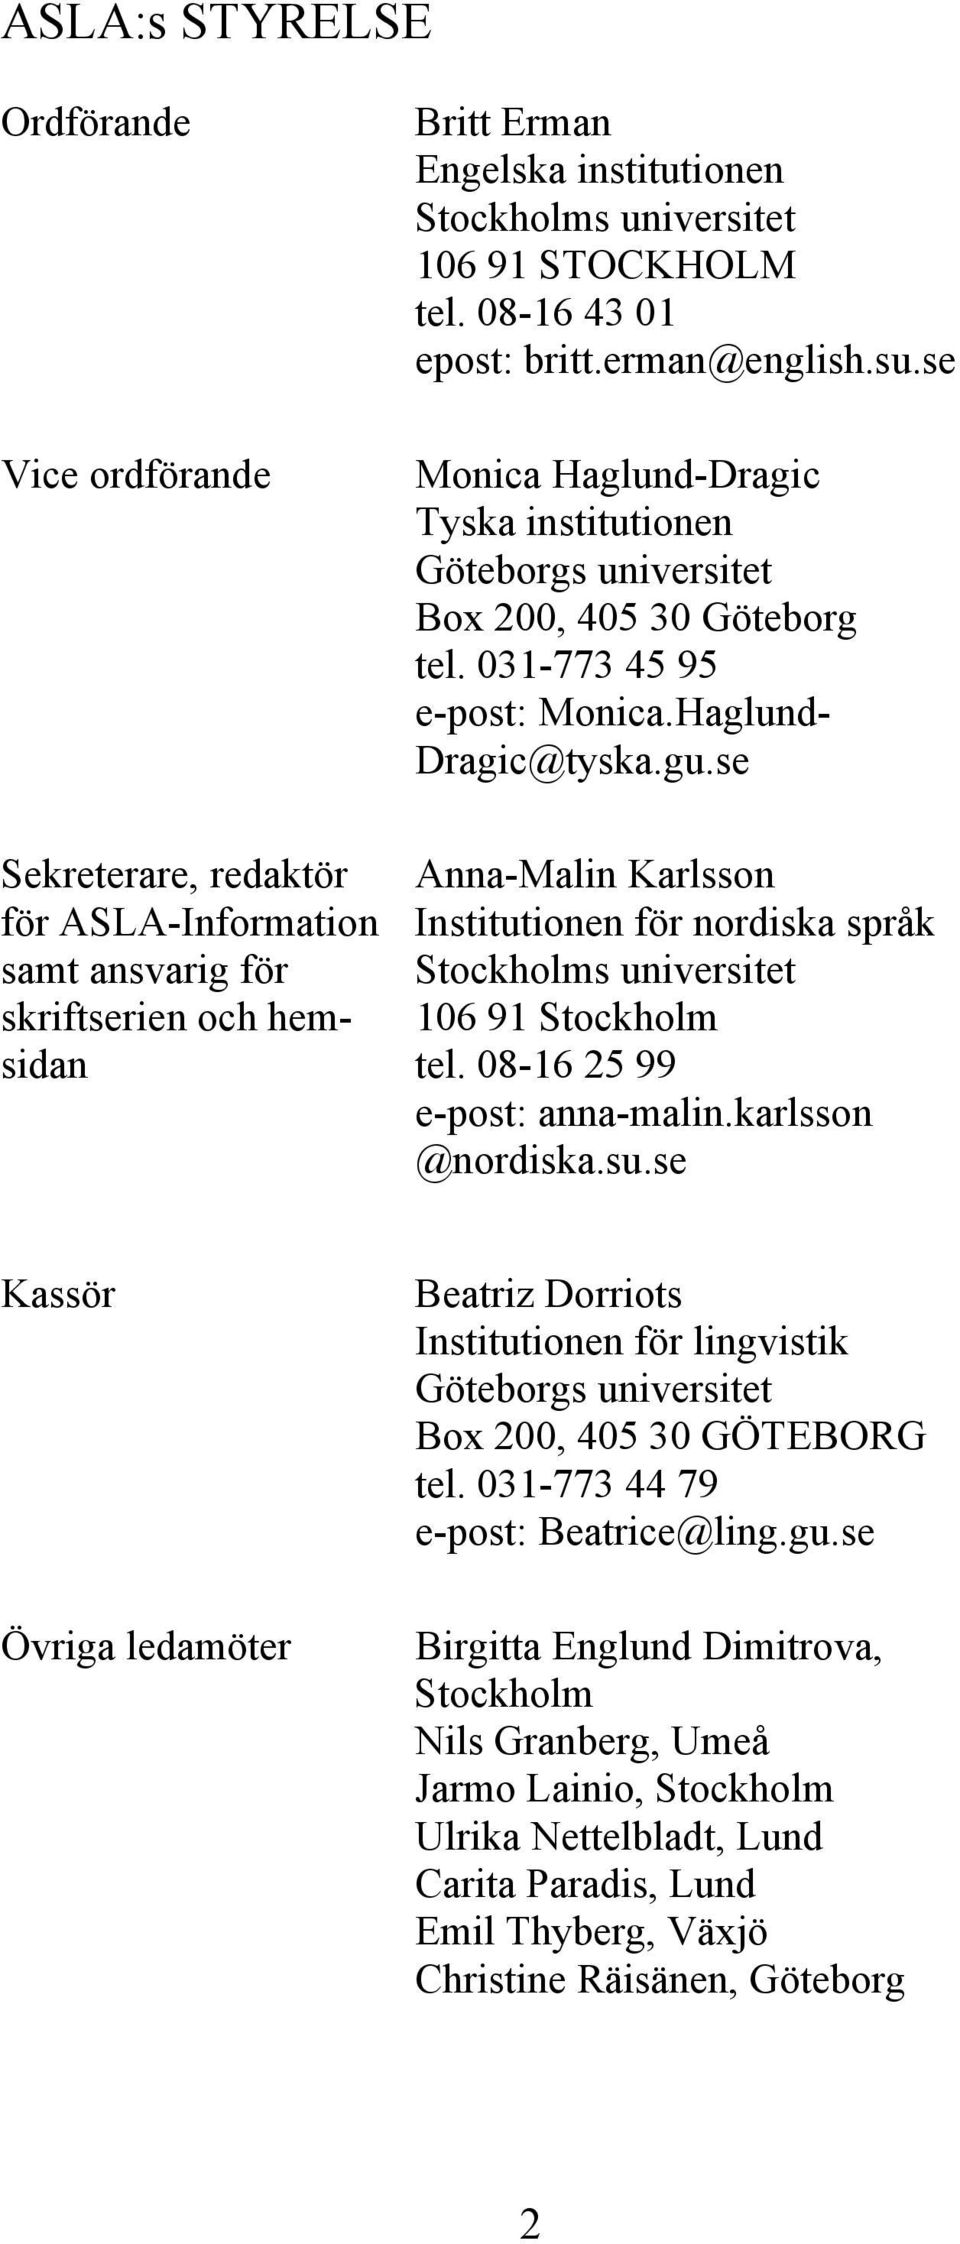 se Sekreterare, redaktör Anna-Malin Karlsson för ASLA-Information Institutionen för nordiska språk samt ansvarig för Stockholms universitet skriftserien och hem- 106 91 Stockholm sidan tel.